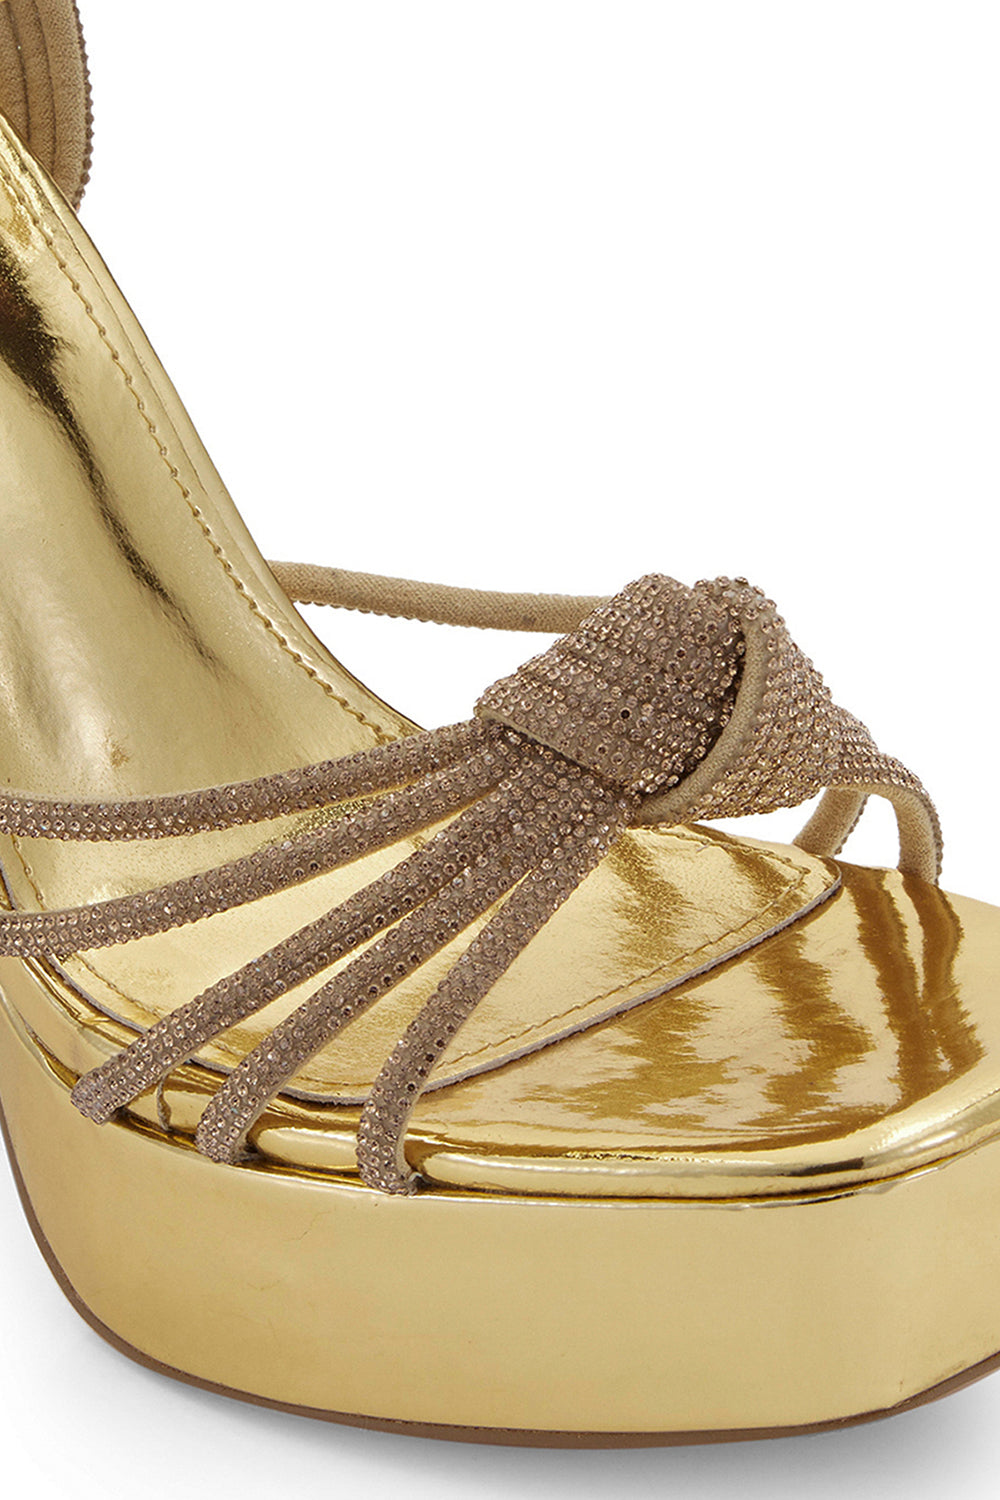 Gold Lover?s Knot Wedding Platform Sandals